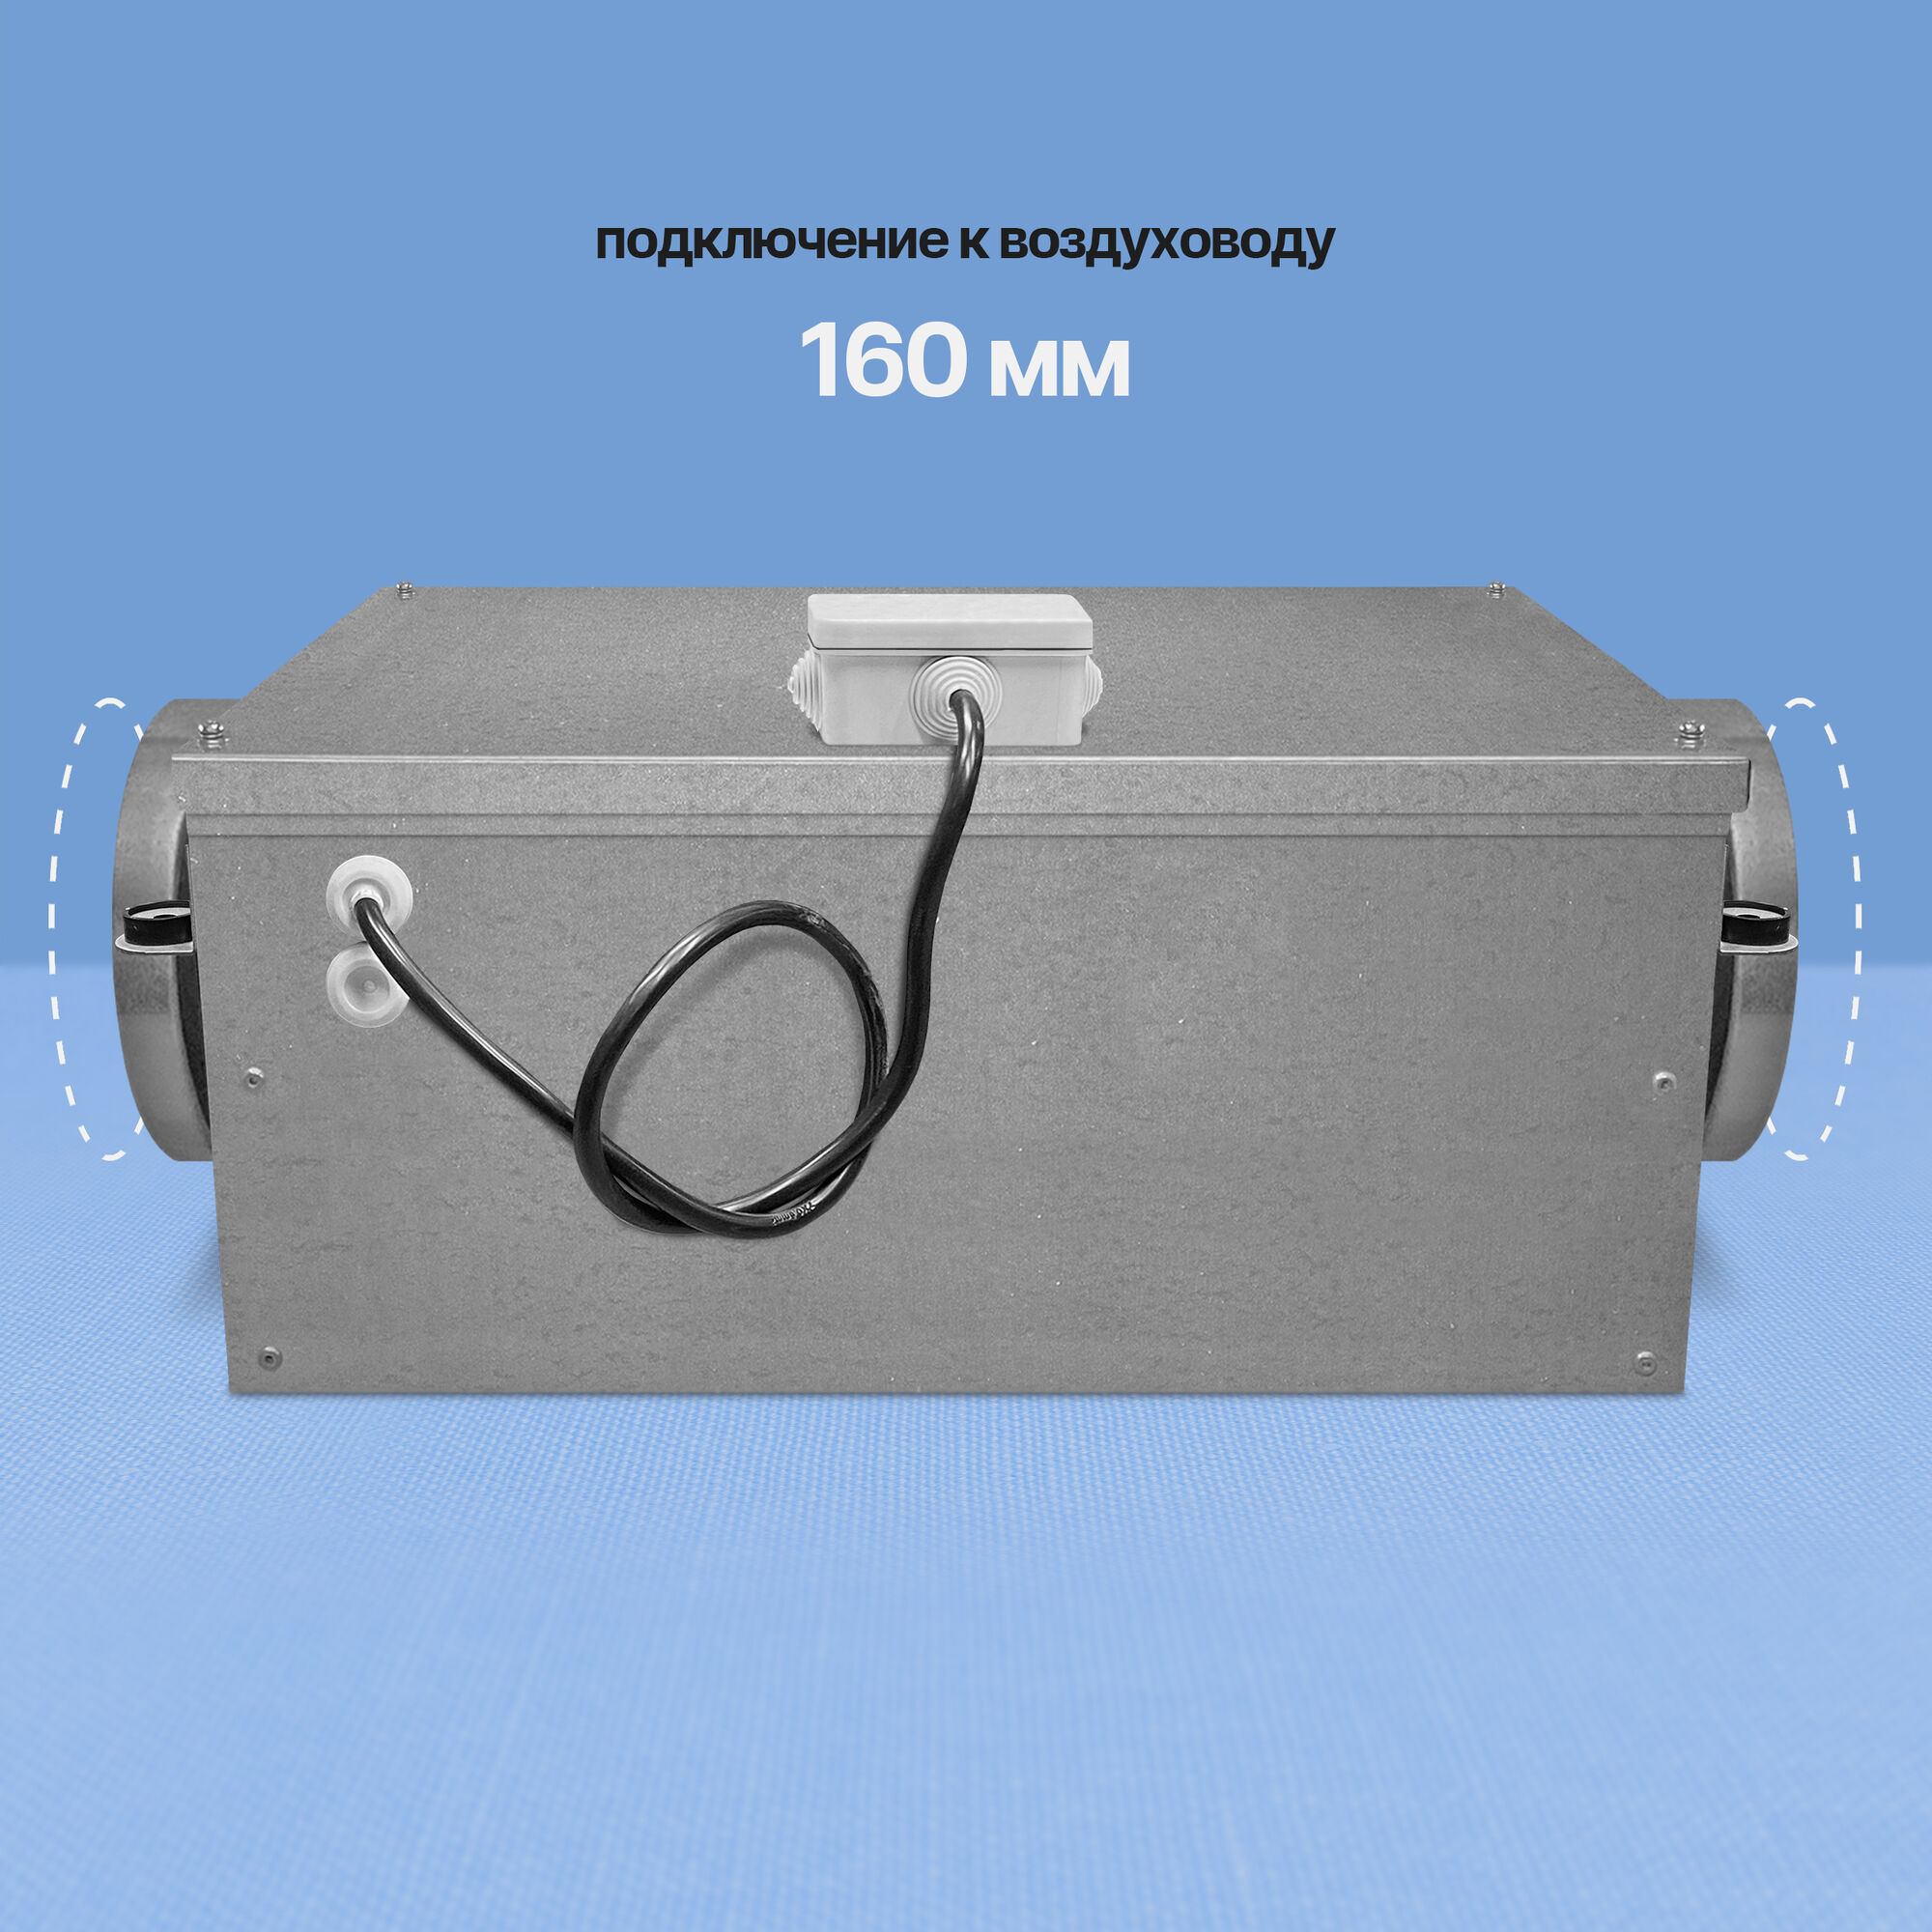 Канальный шумоизолированный вентилятор Naveka VS 160 (AC, D220) 2